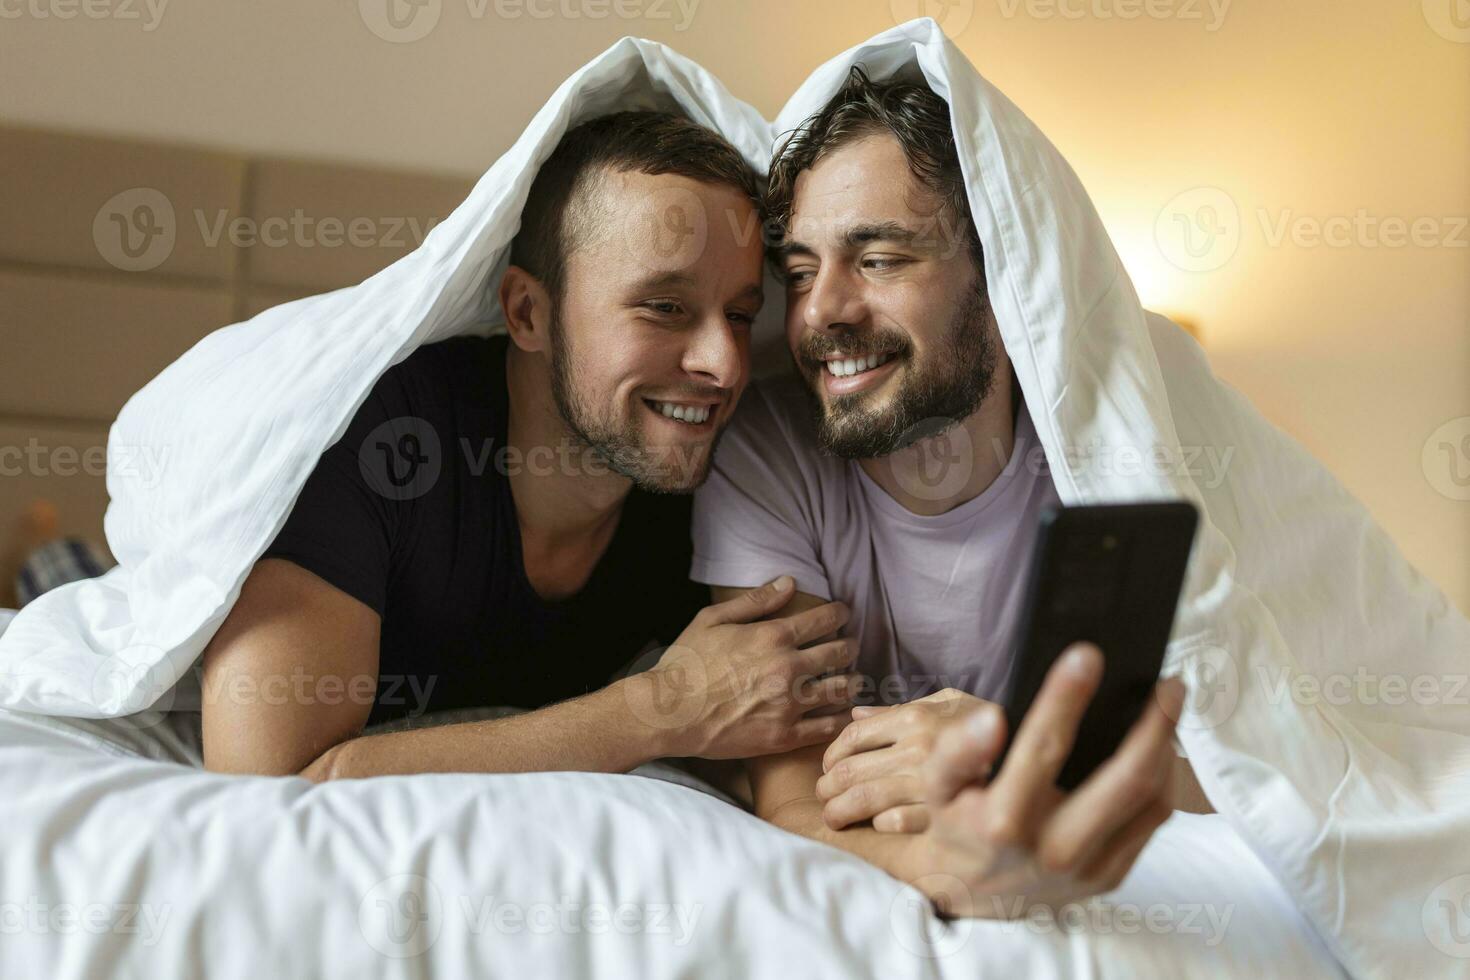 contento gay Pareja teniendo oferta momentos en dormitorio - homosexual amor relación y género igualdad concepto foto